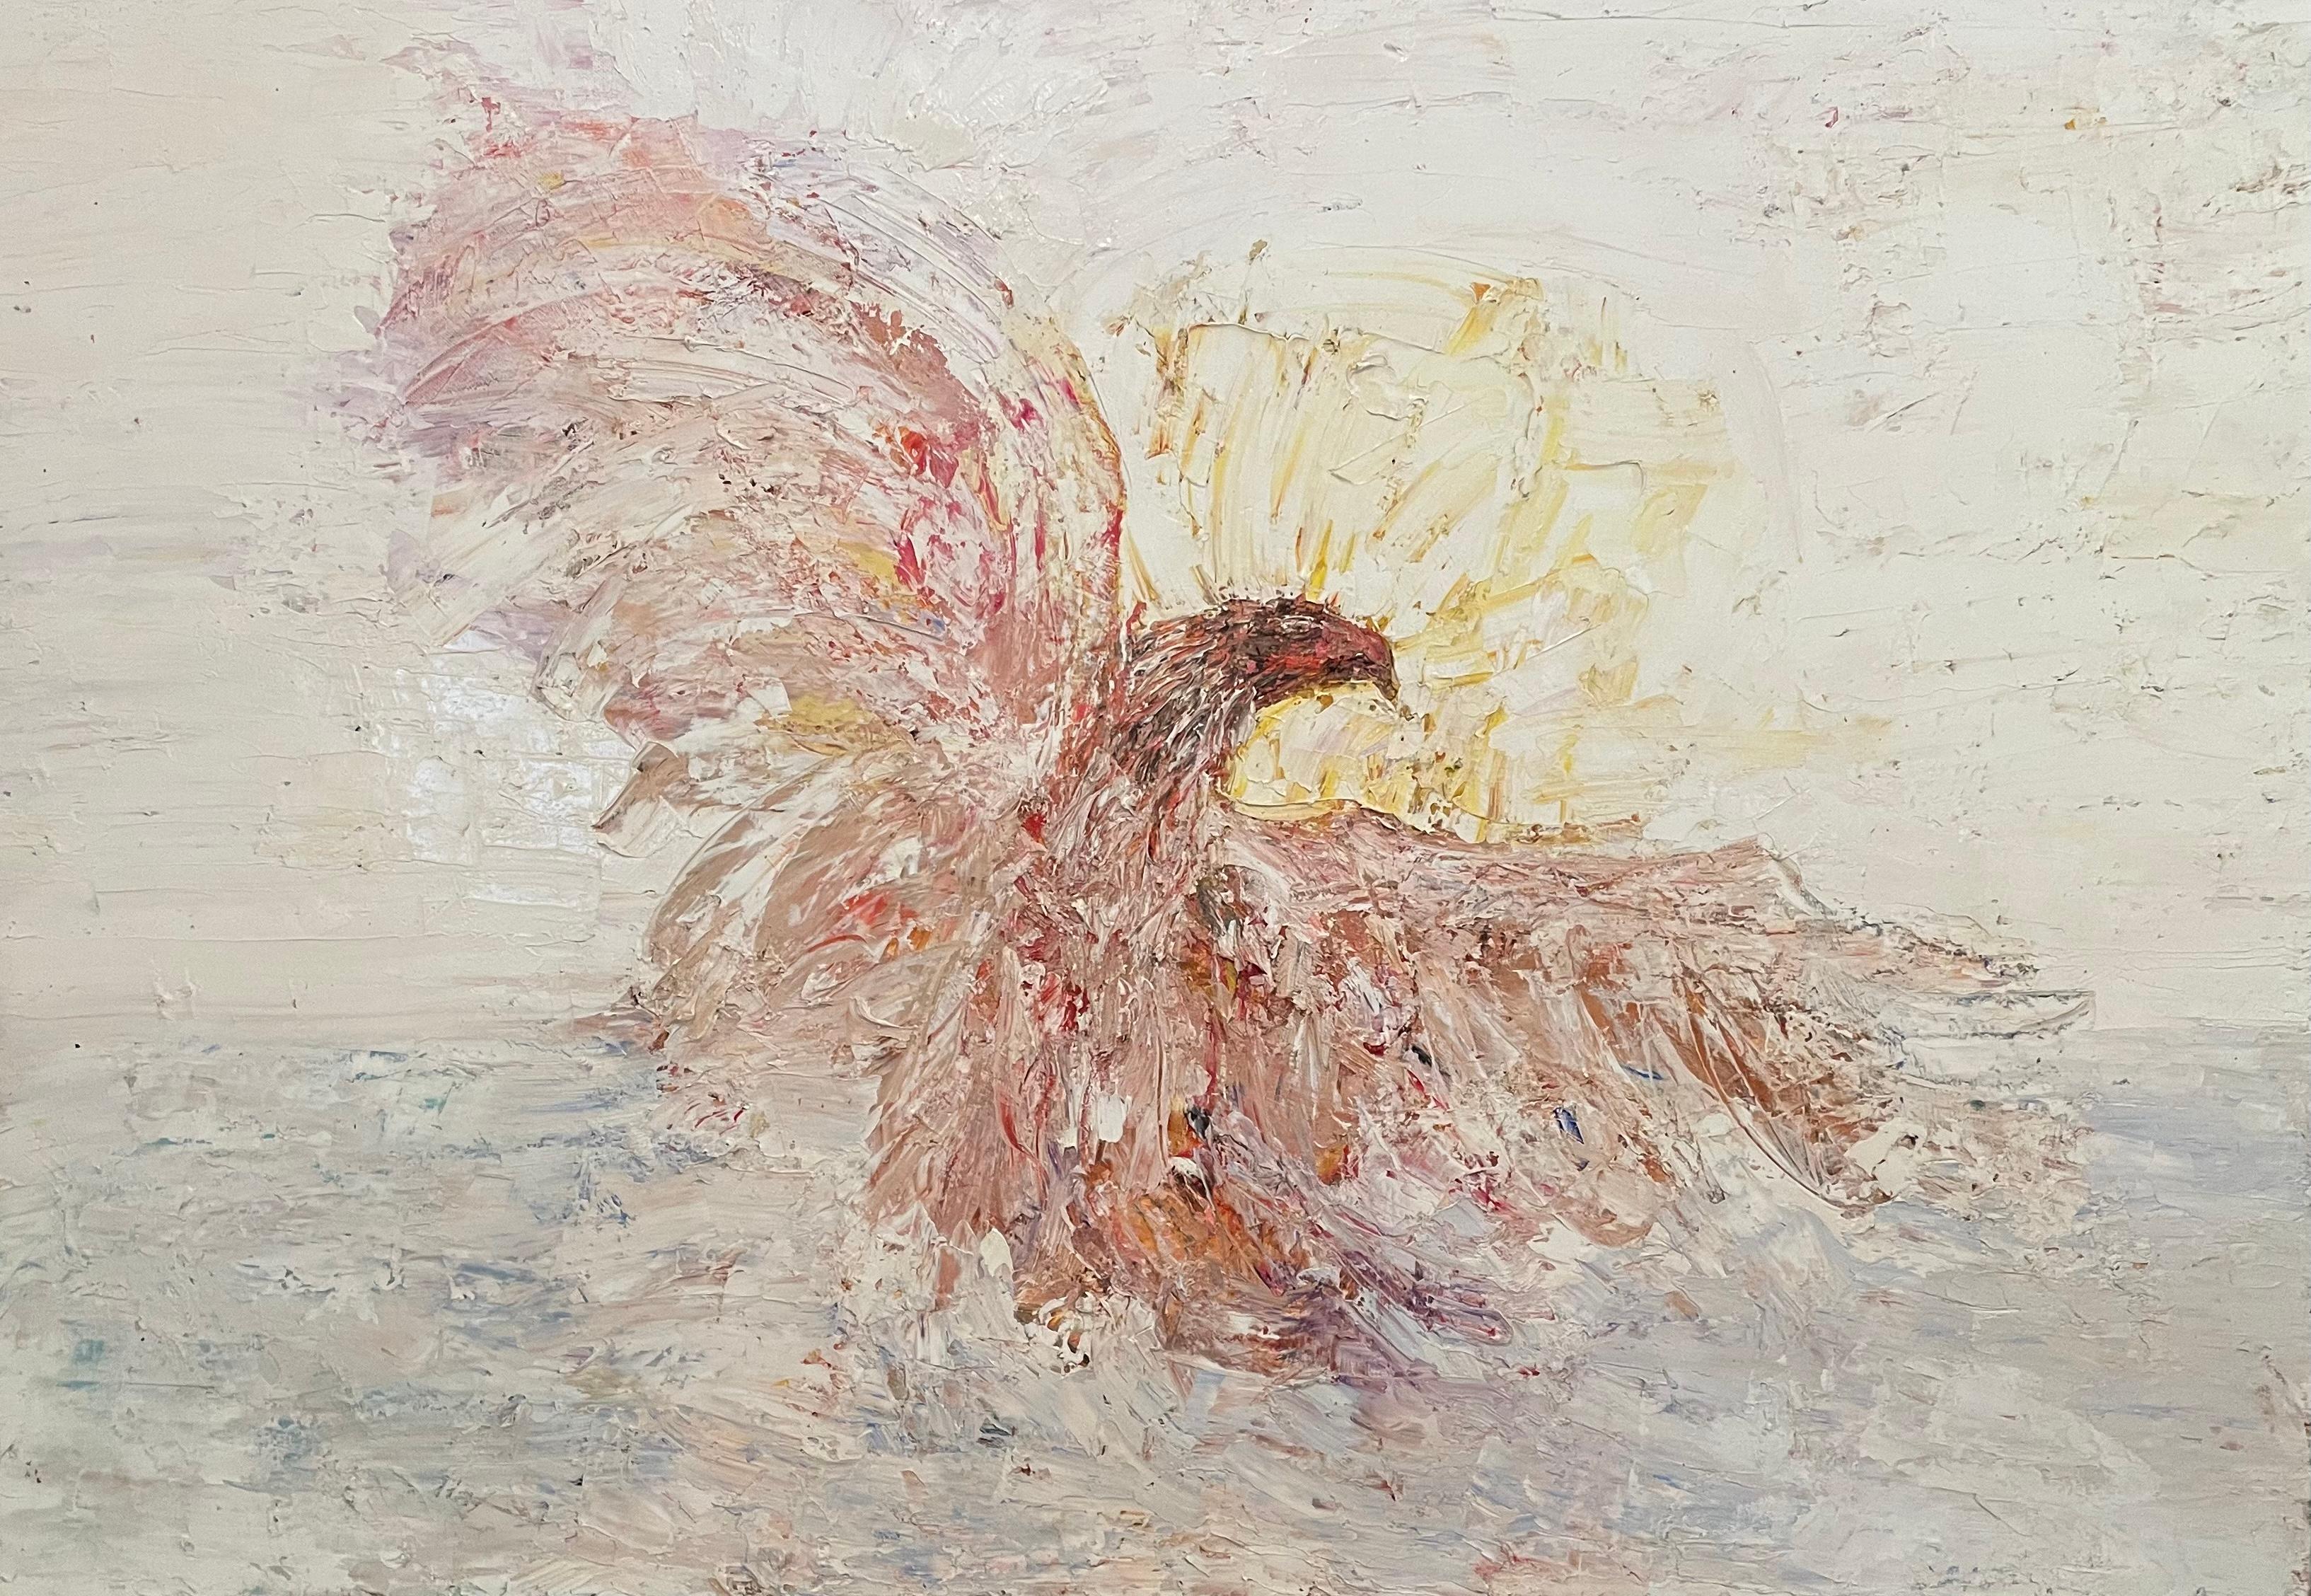 The Eagle" - Großer Vogel in Orange und Weiß - Abstraktes expressionistisches Ölgemälde